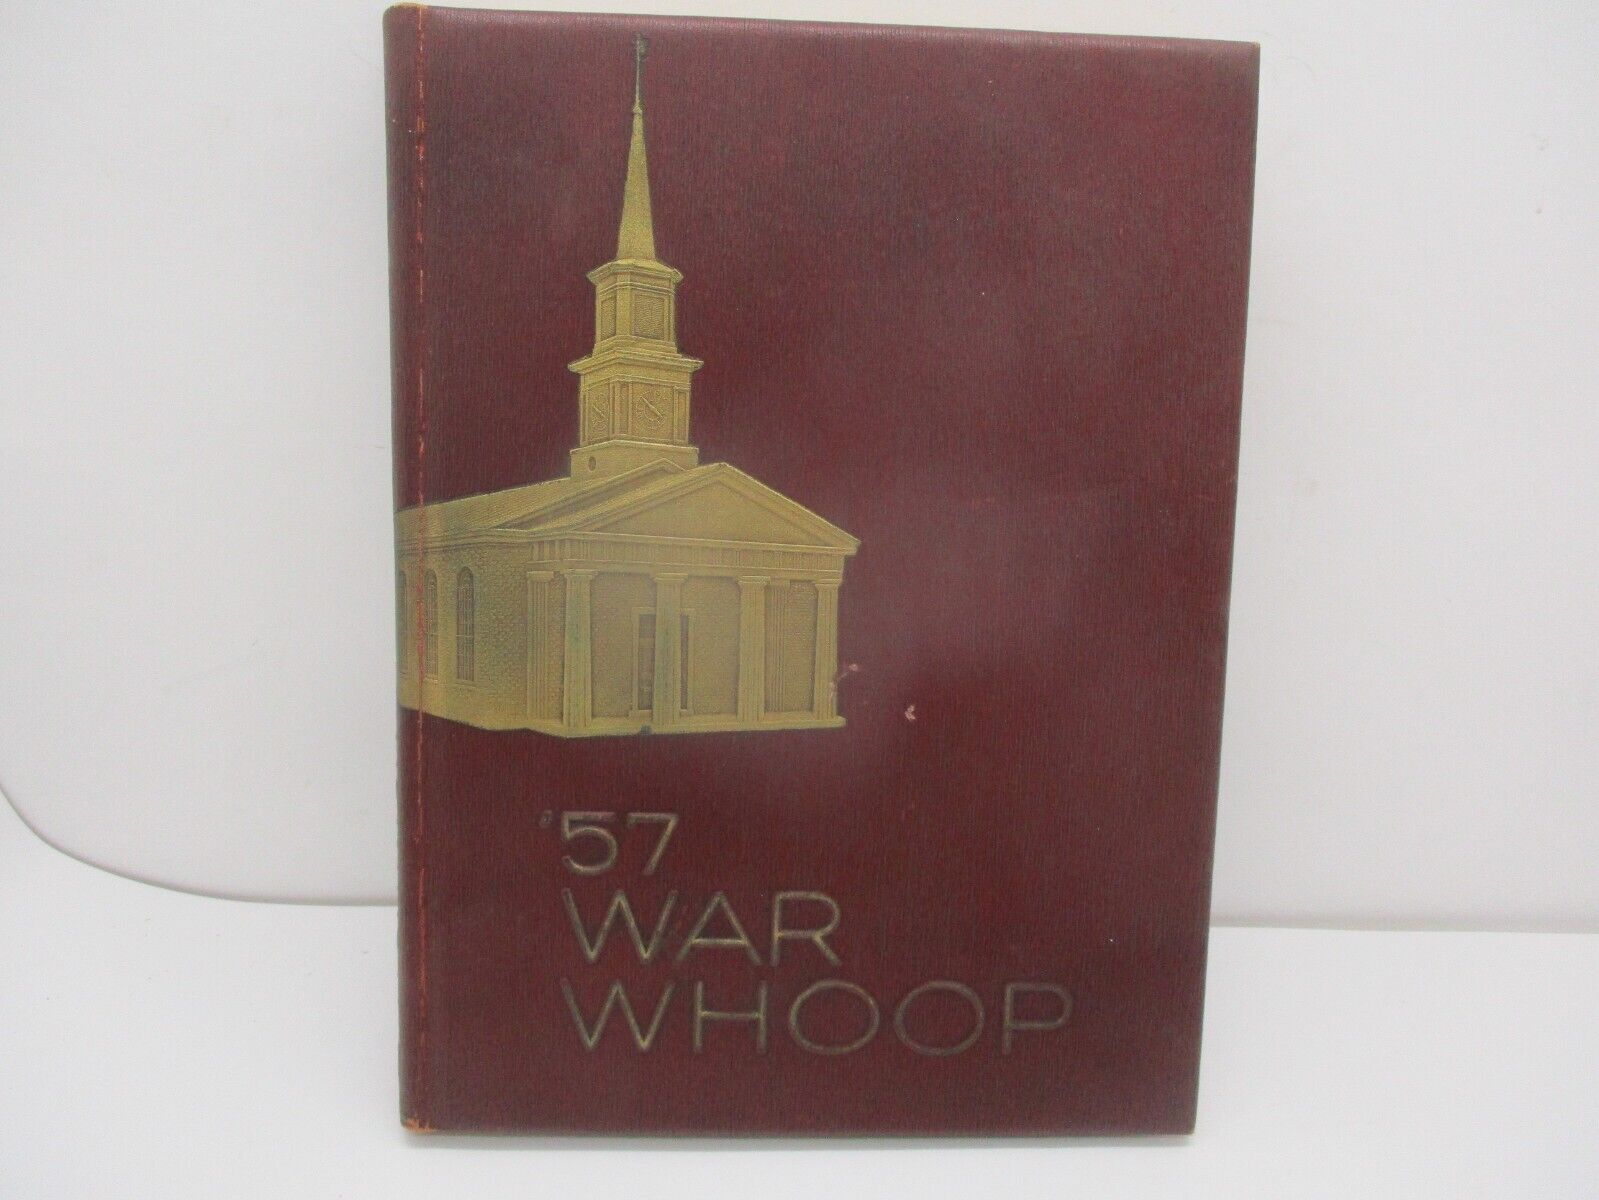 1957 WAR WHOOP - NORWICH UNIVERSITY YEARBOOK - NORTHFIELD VERMONT